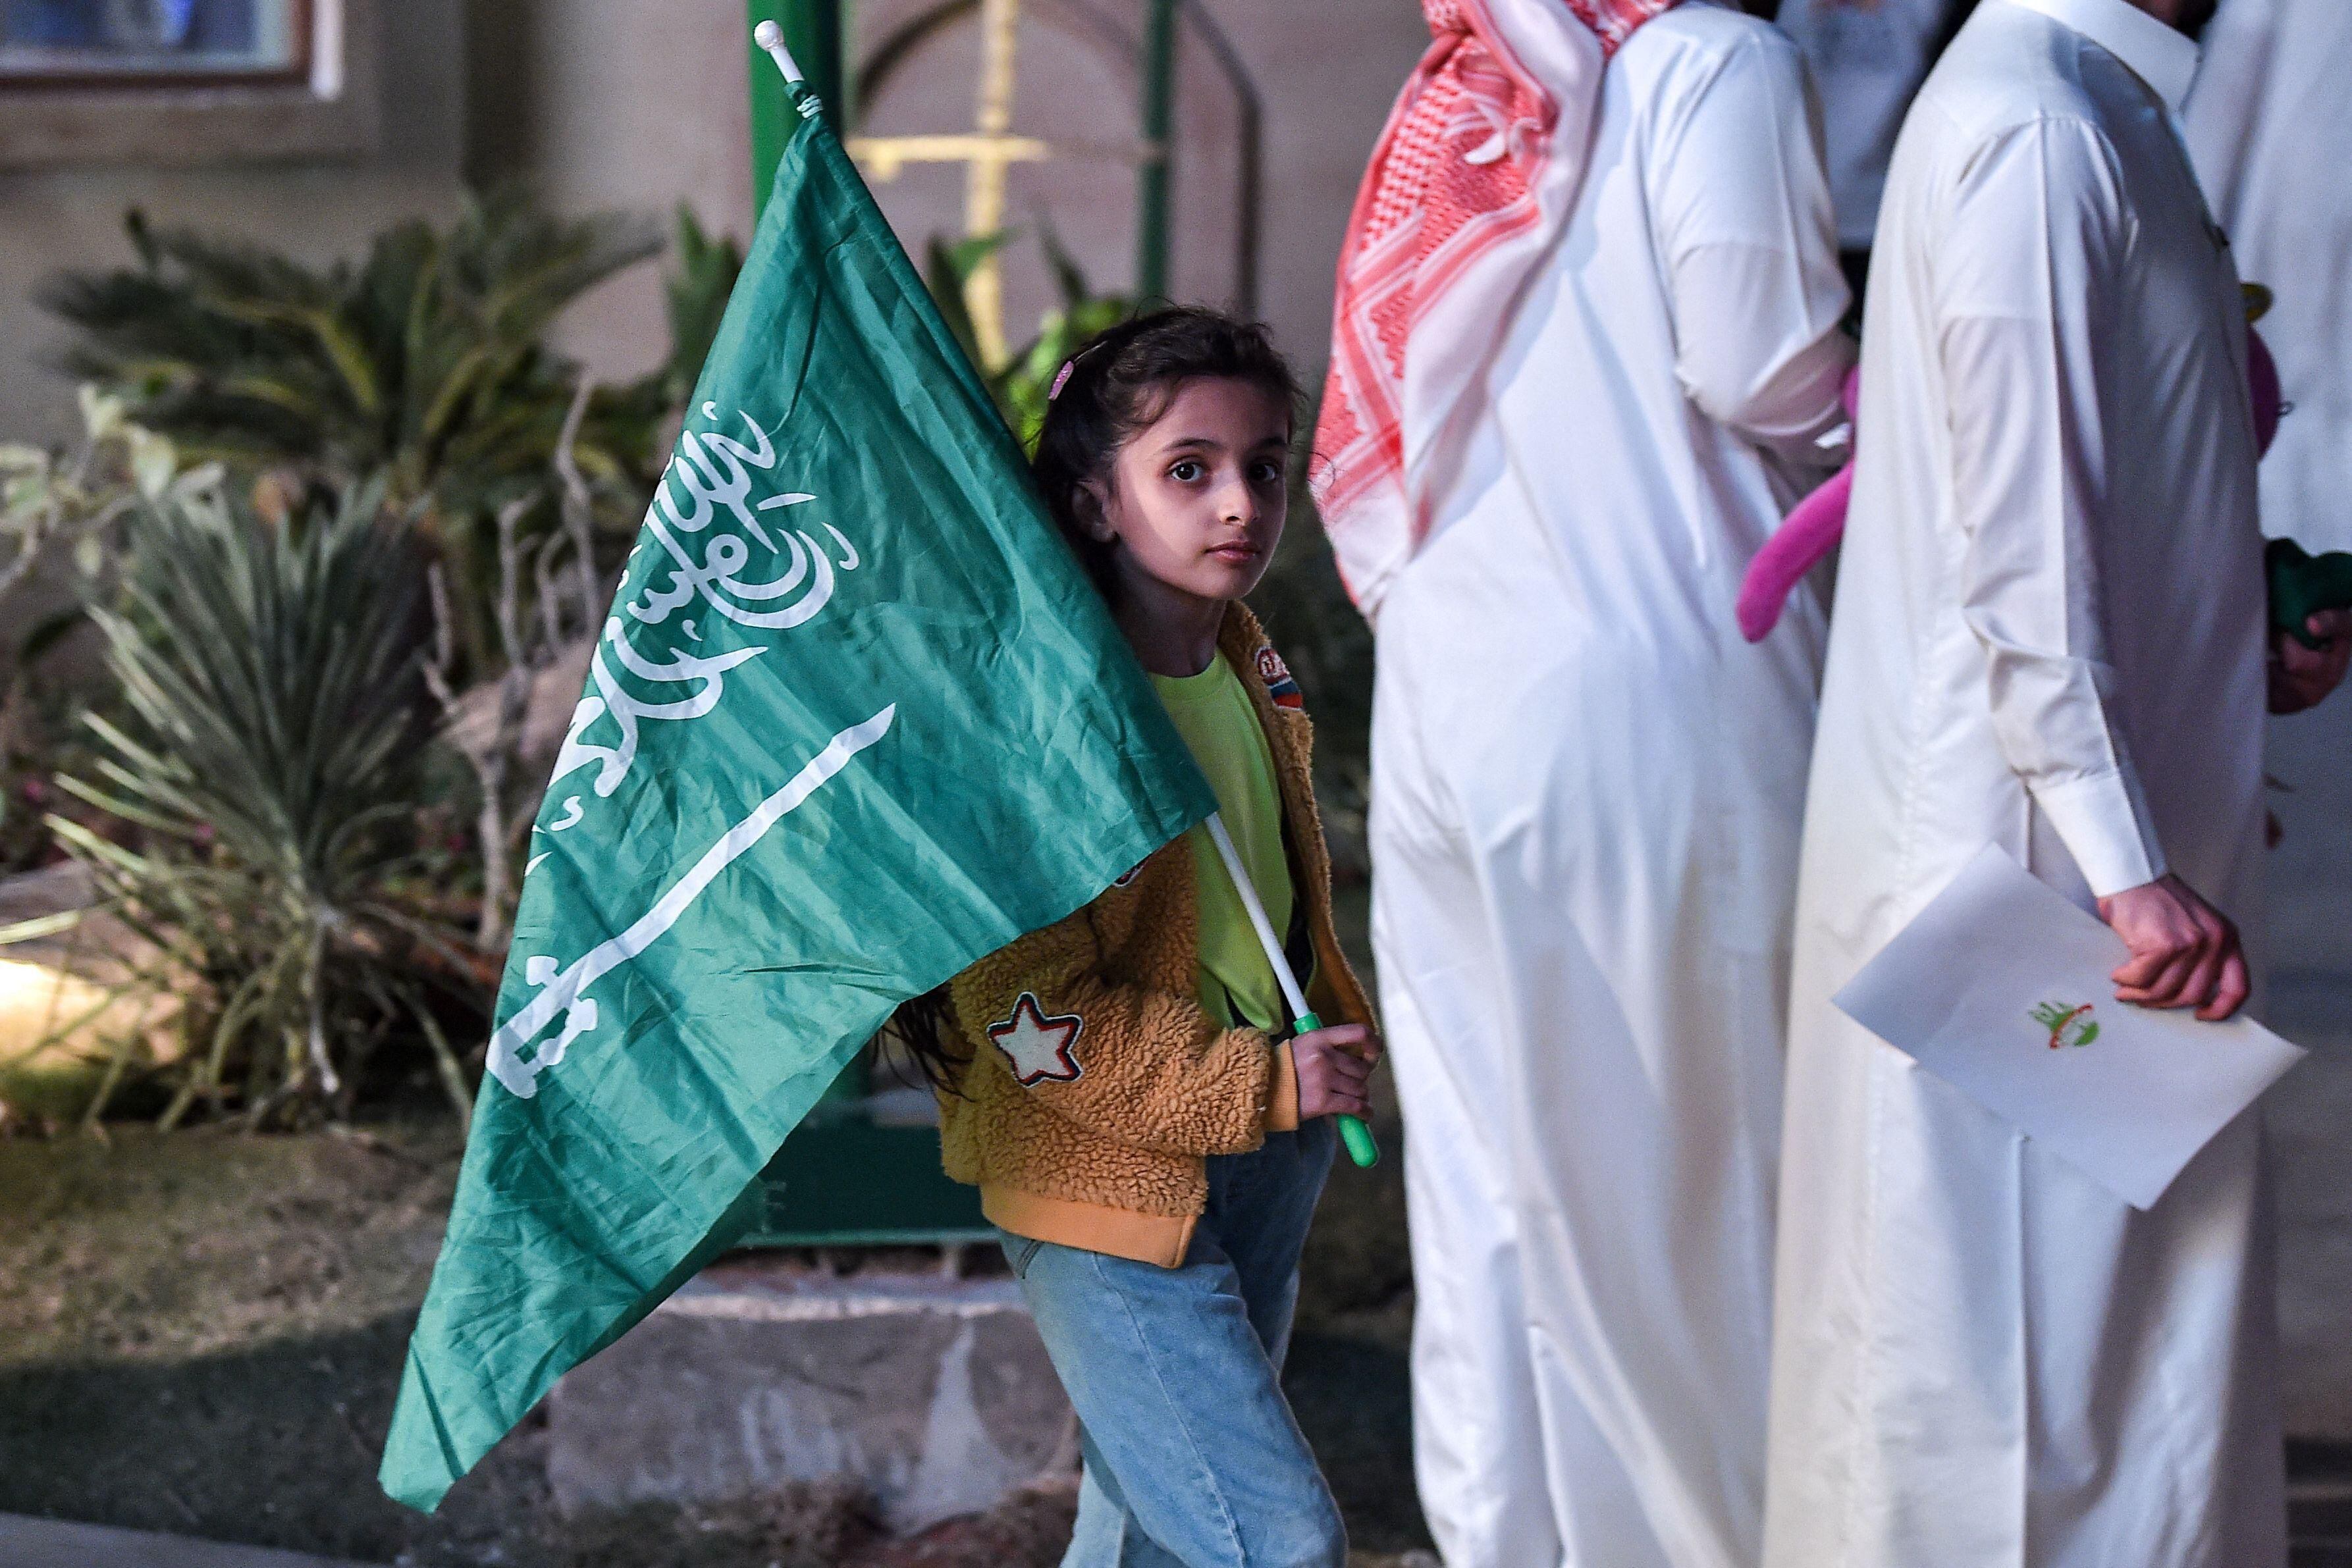 Organizadores do Mundial feminino descartam patrocínio saudita